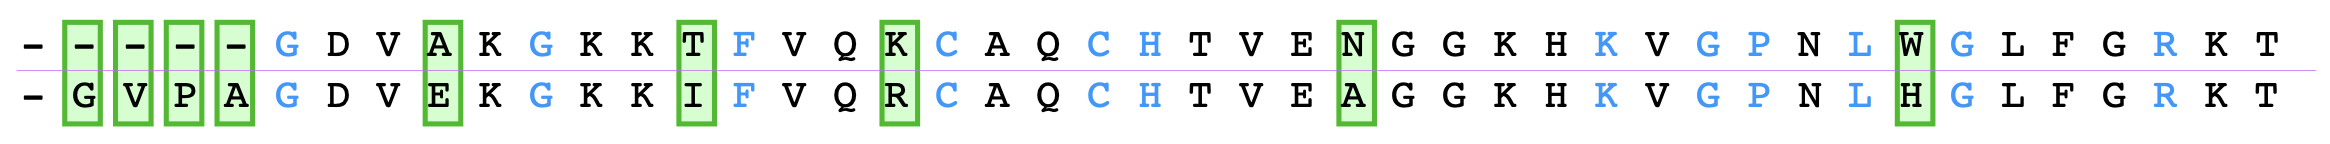 Exempel på jämförelse av aminosyrasekvenser.